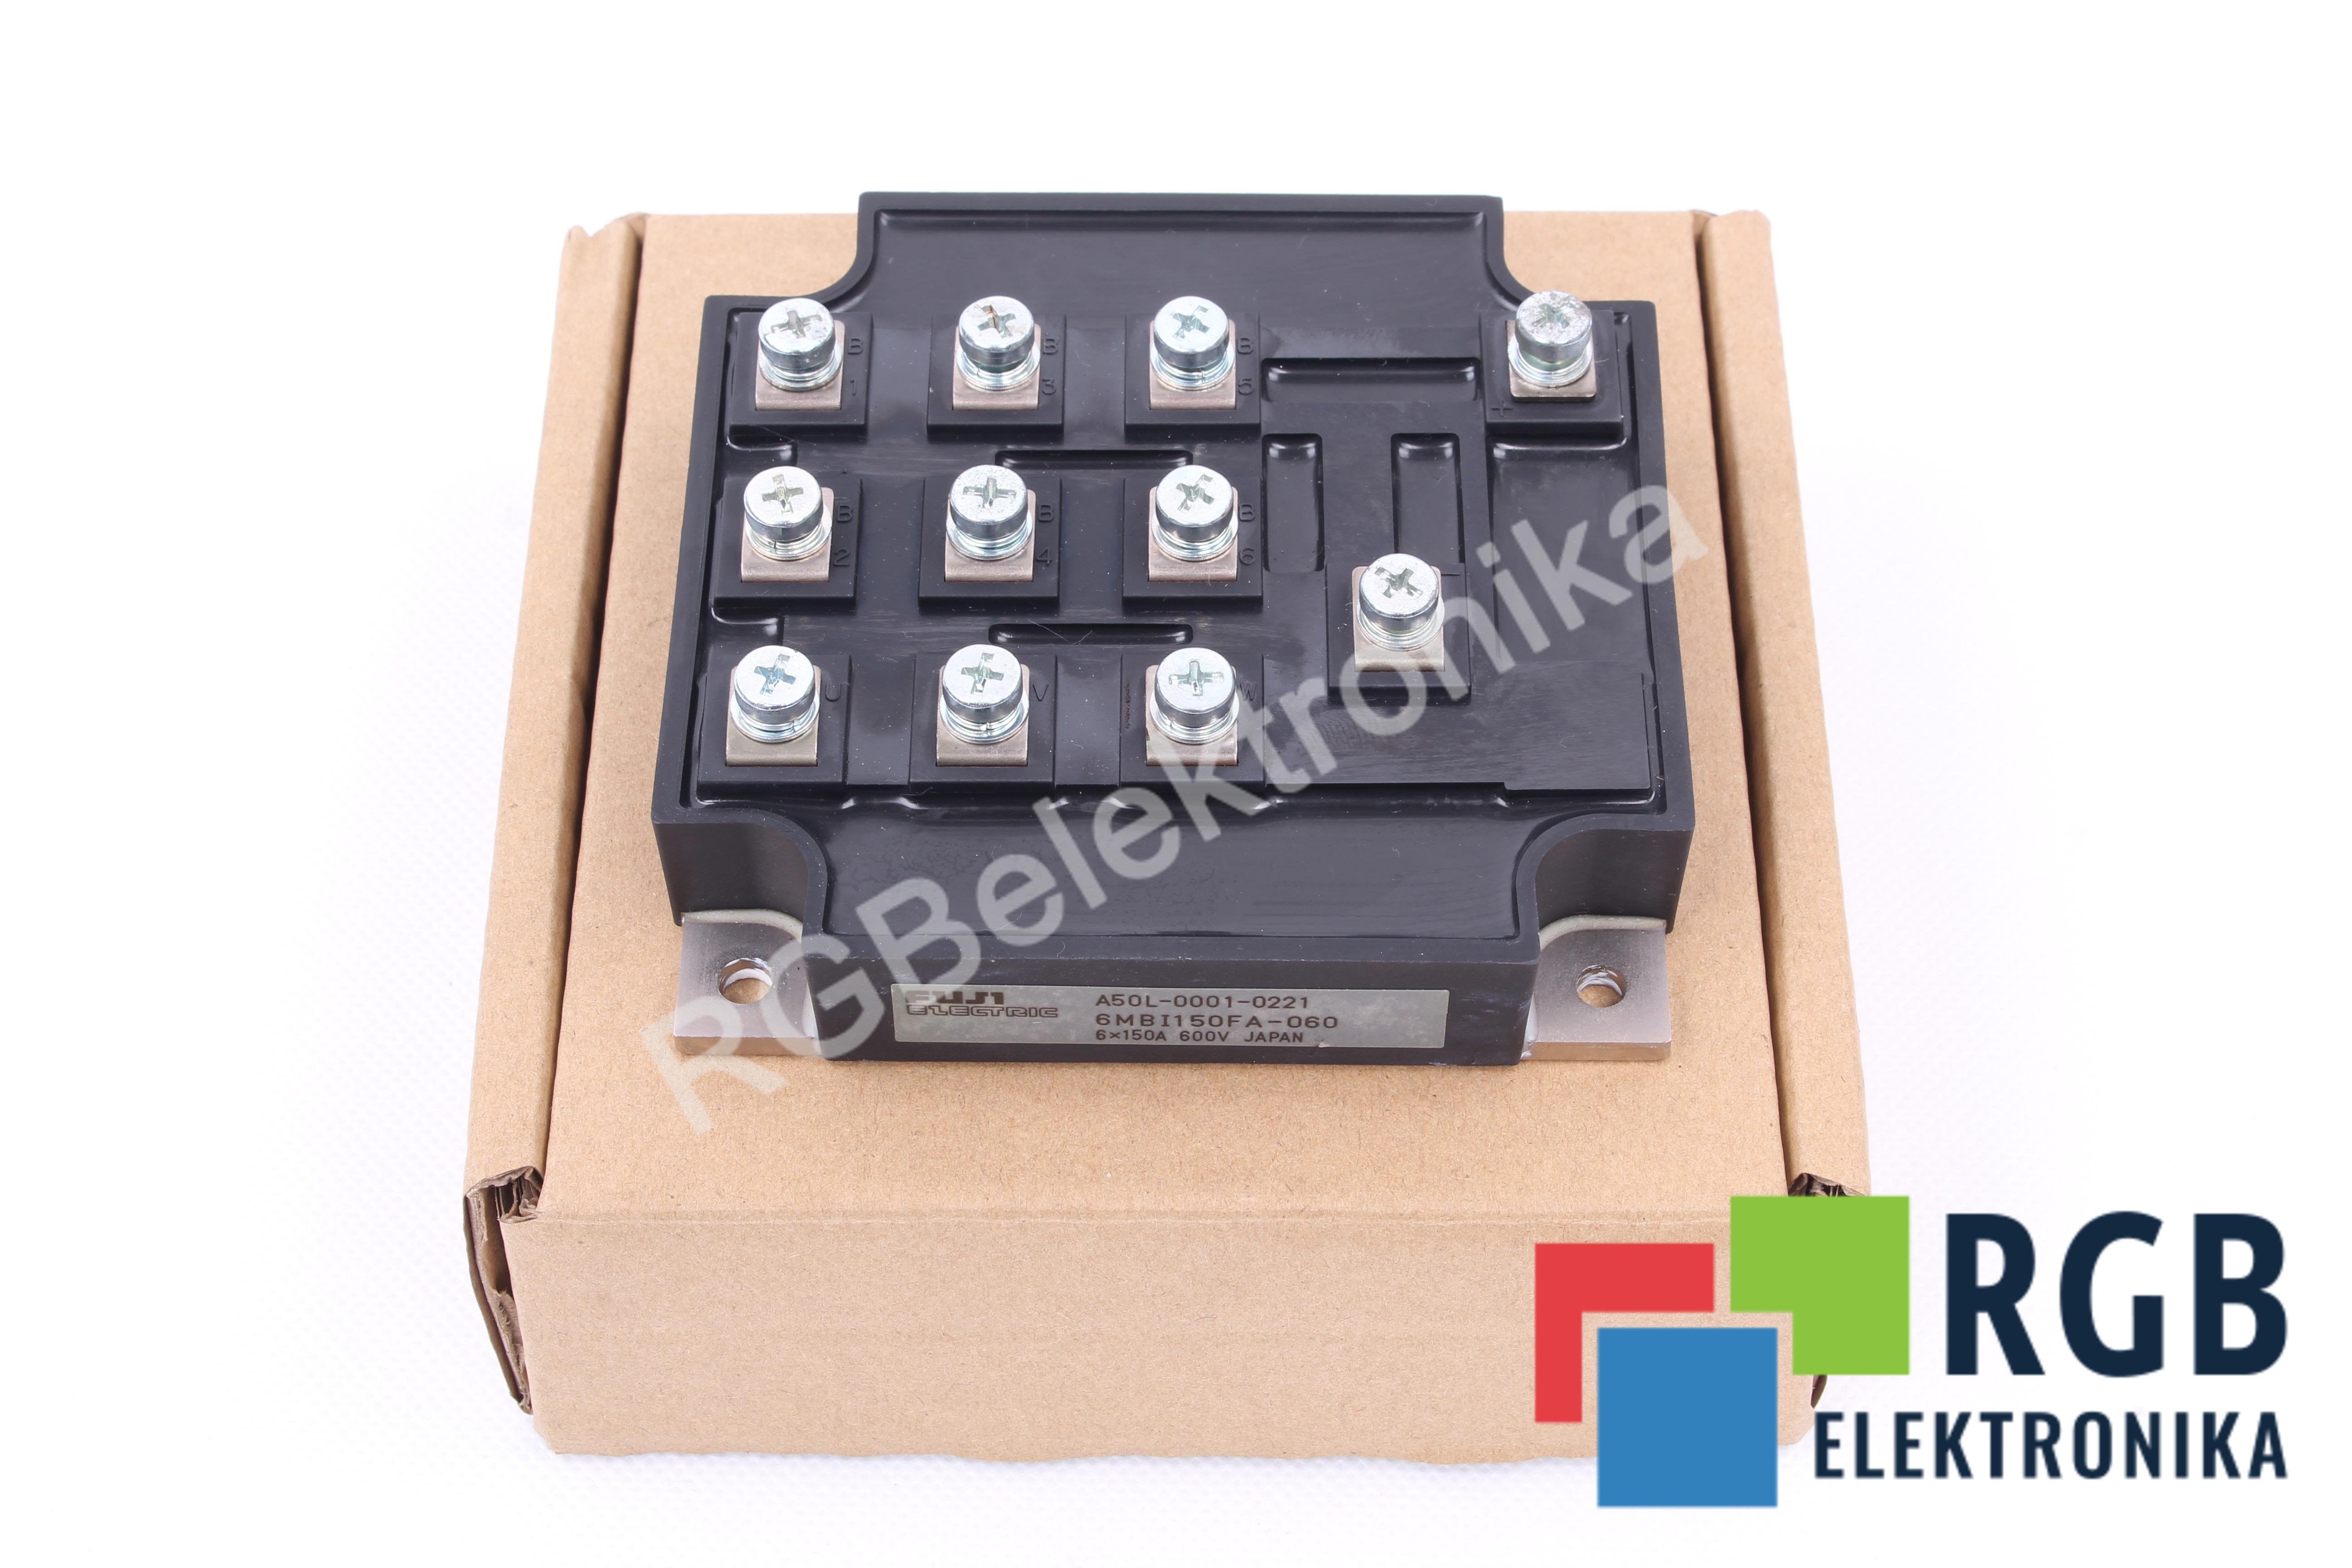 IGBT MODULE A50L-0001-0221 6MBI150FA-060 150A 60V FUJI ELECTRIC